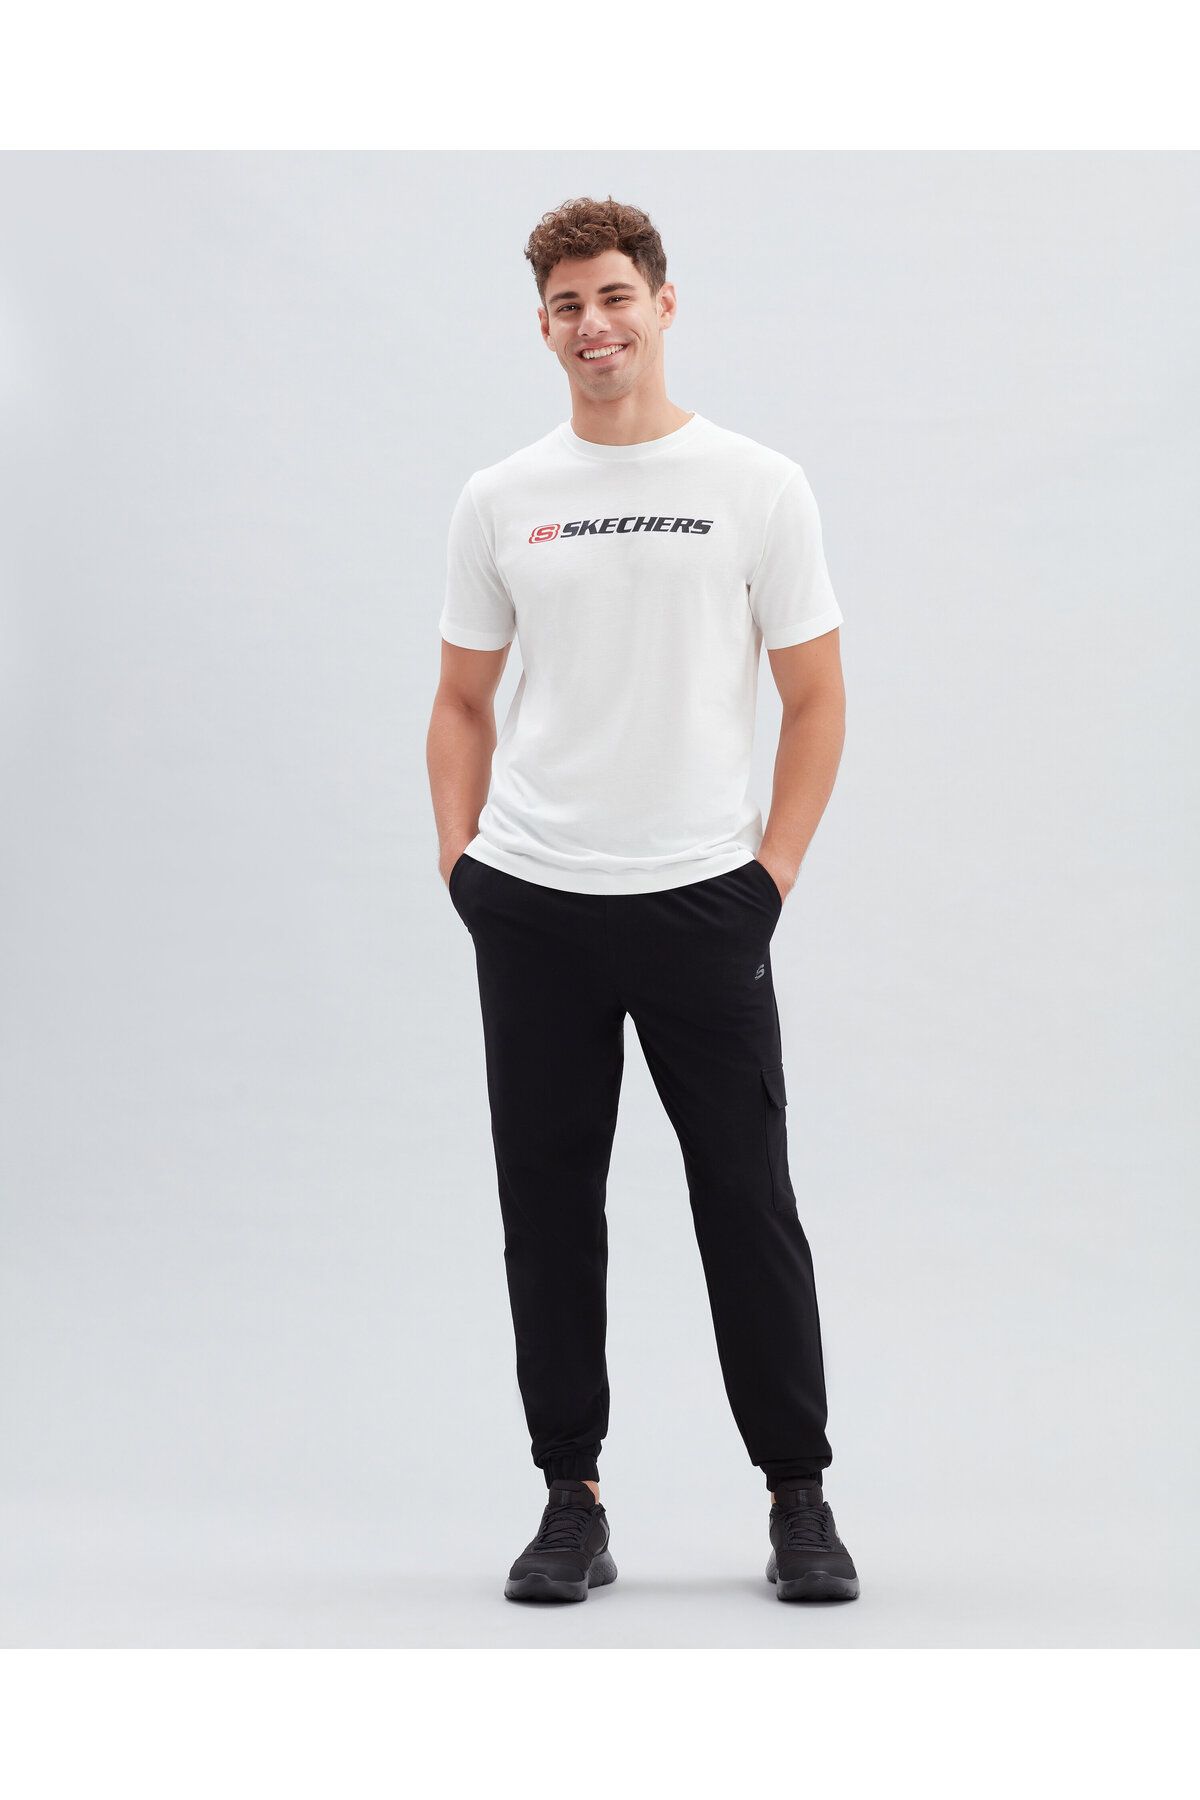 تی شرت آستین کوتاه مردانه  اسکچرز Skechers (برند ایالات متحده آمریکا)